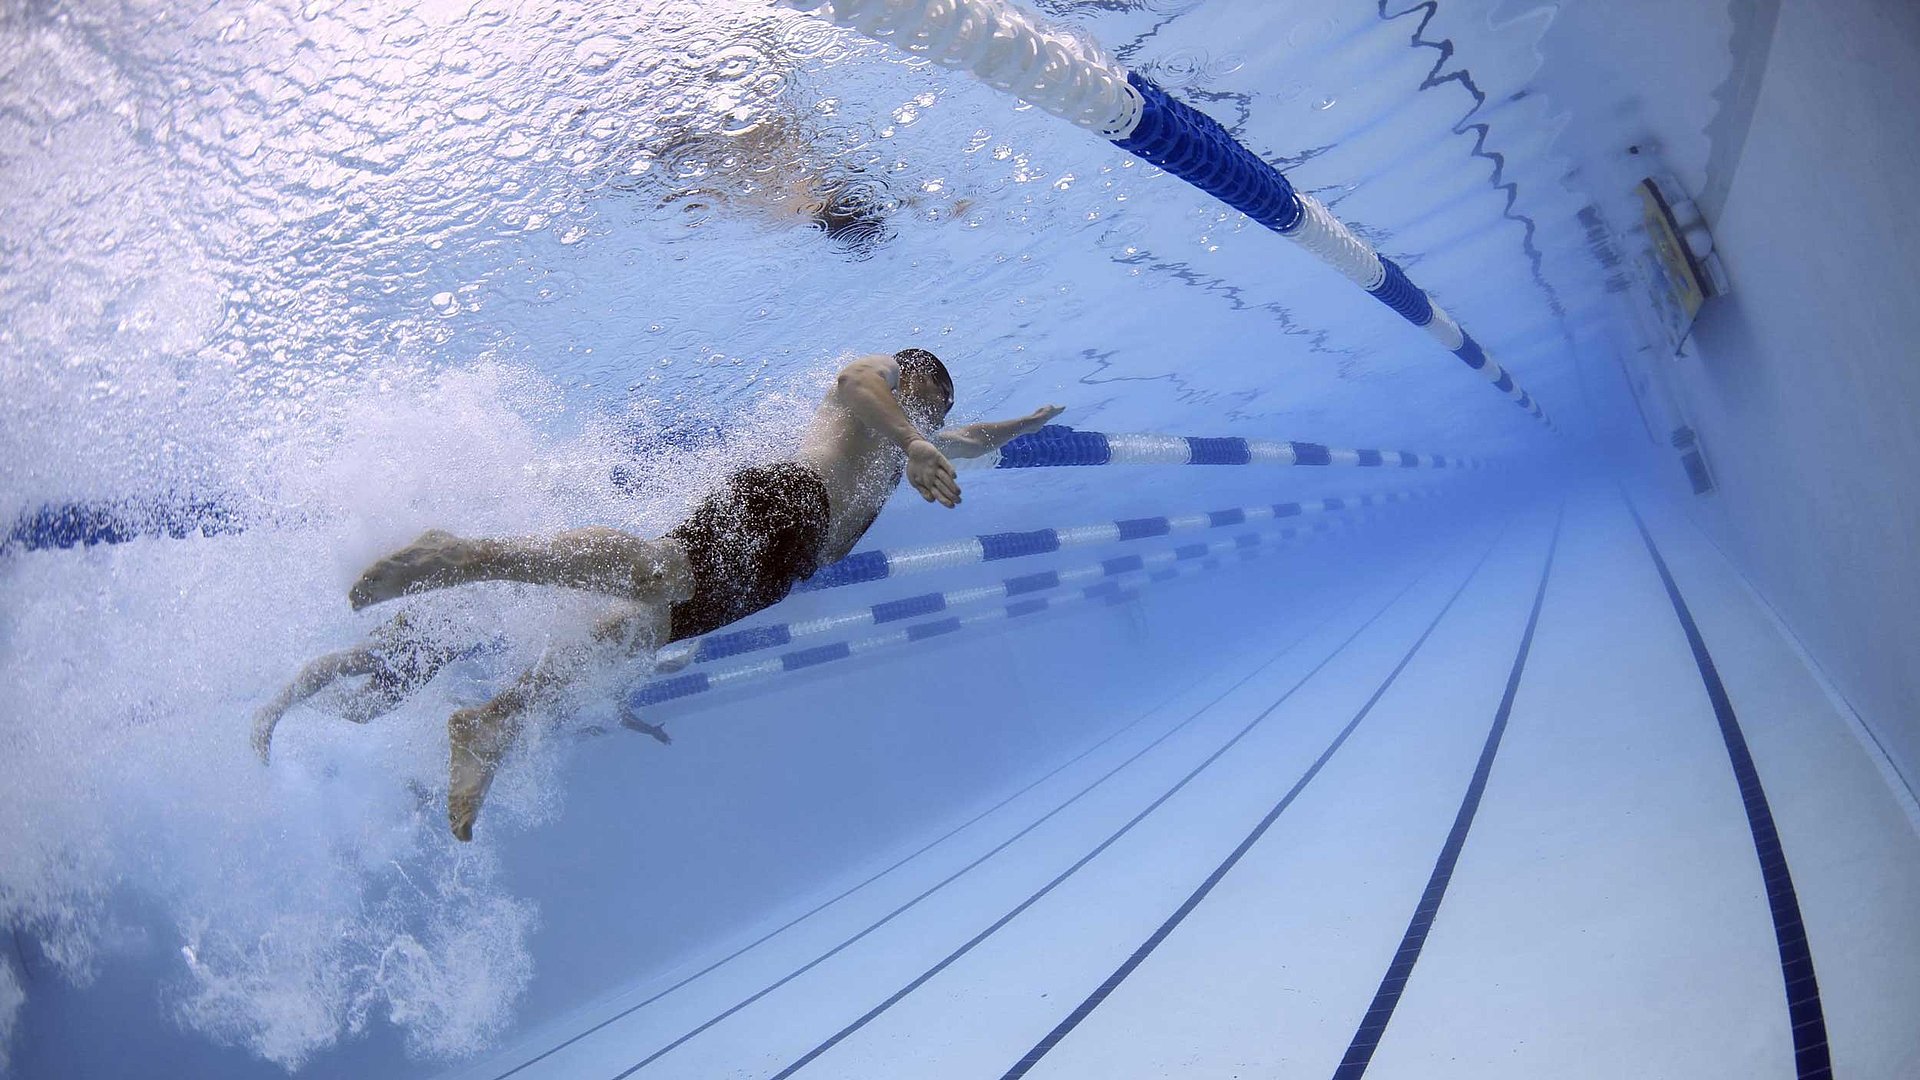 Freizeit und Sport in Oberfranken - Unterwasserbild eines Schwimmers während seiner Bahn